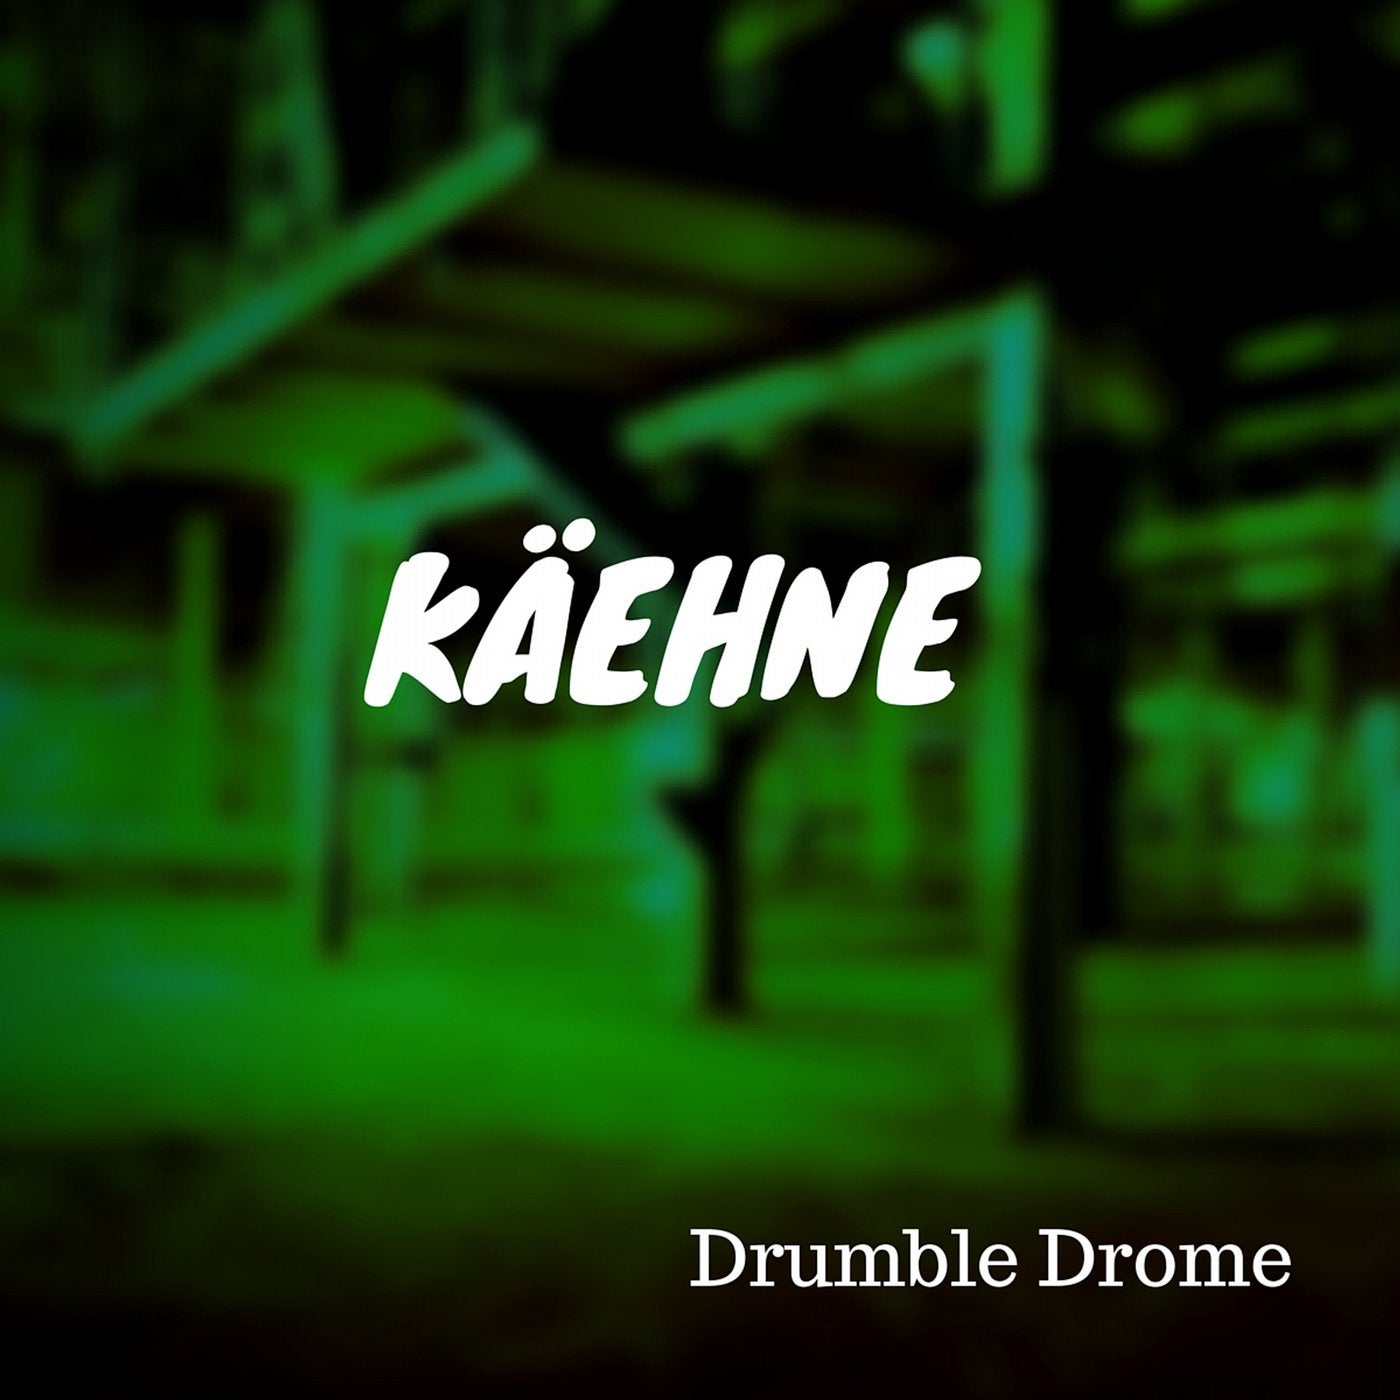 Drumble Drome